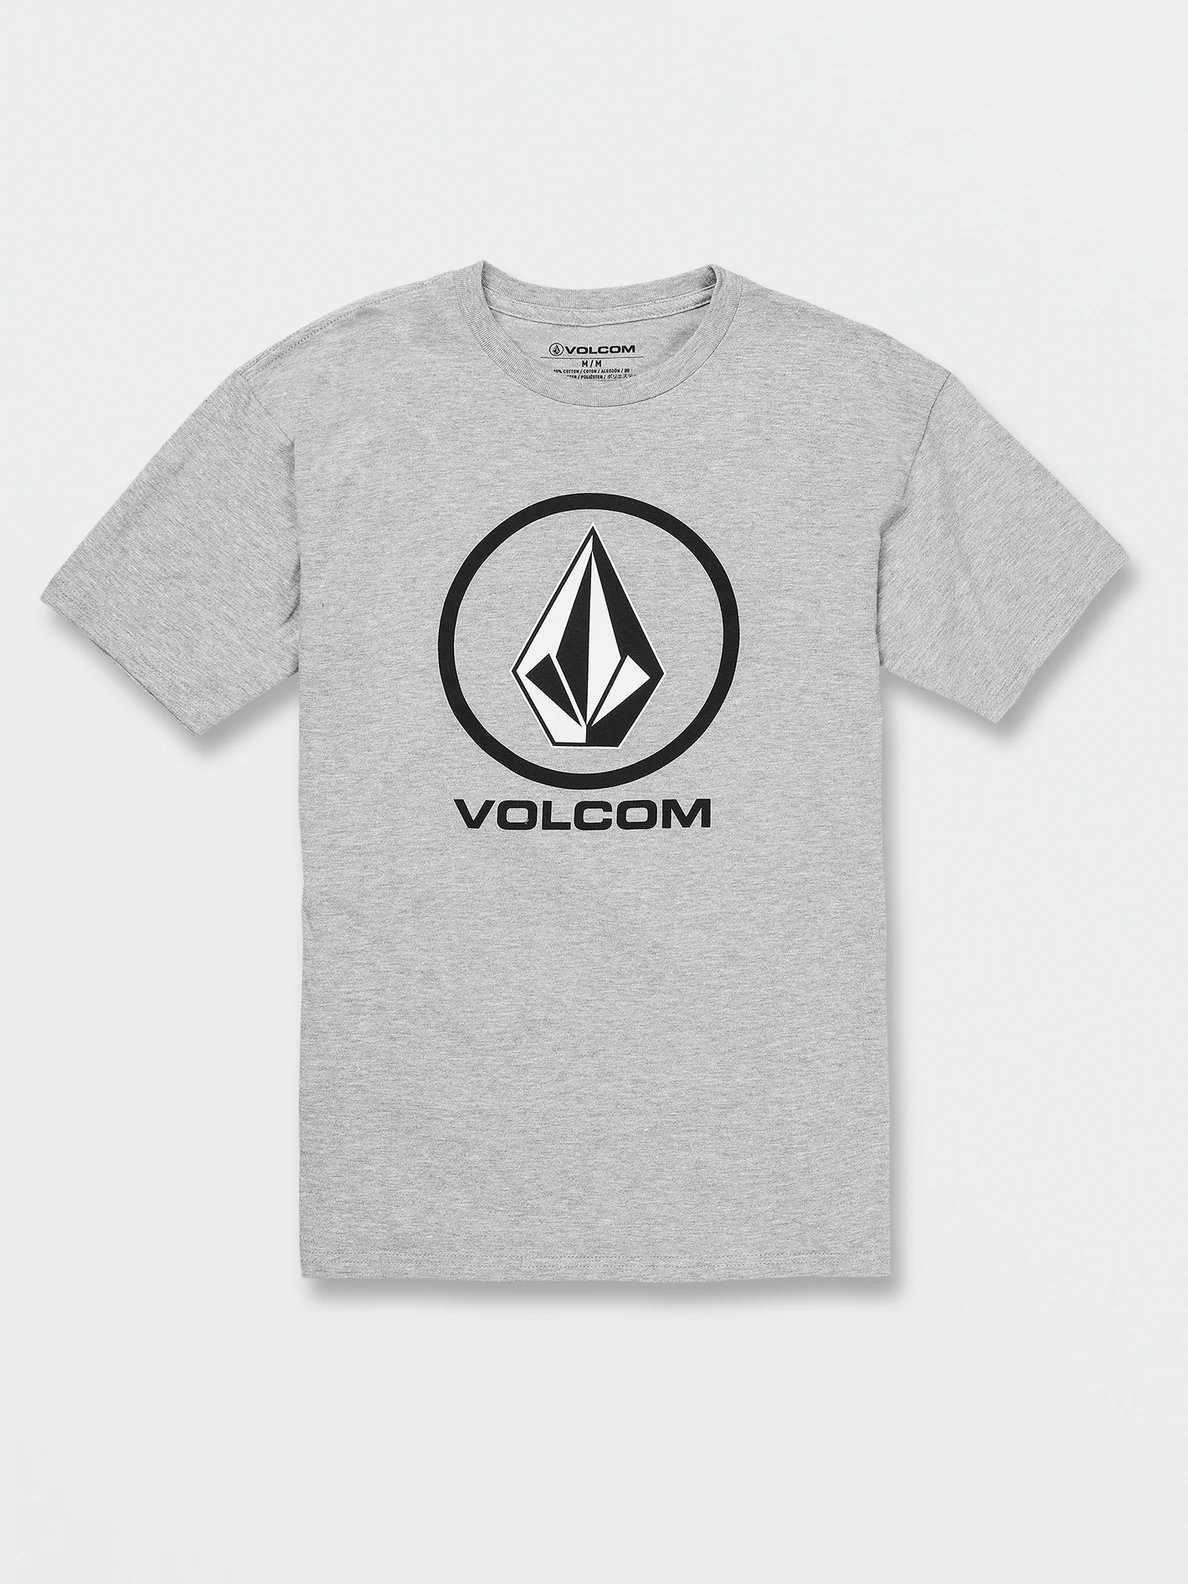 VOLCOM Trademark Mens Tee - BLACK